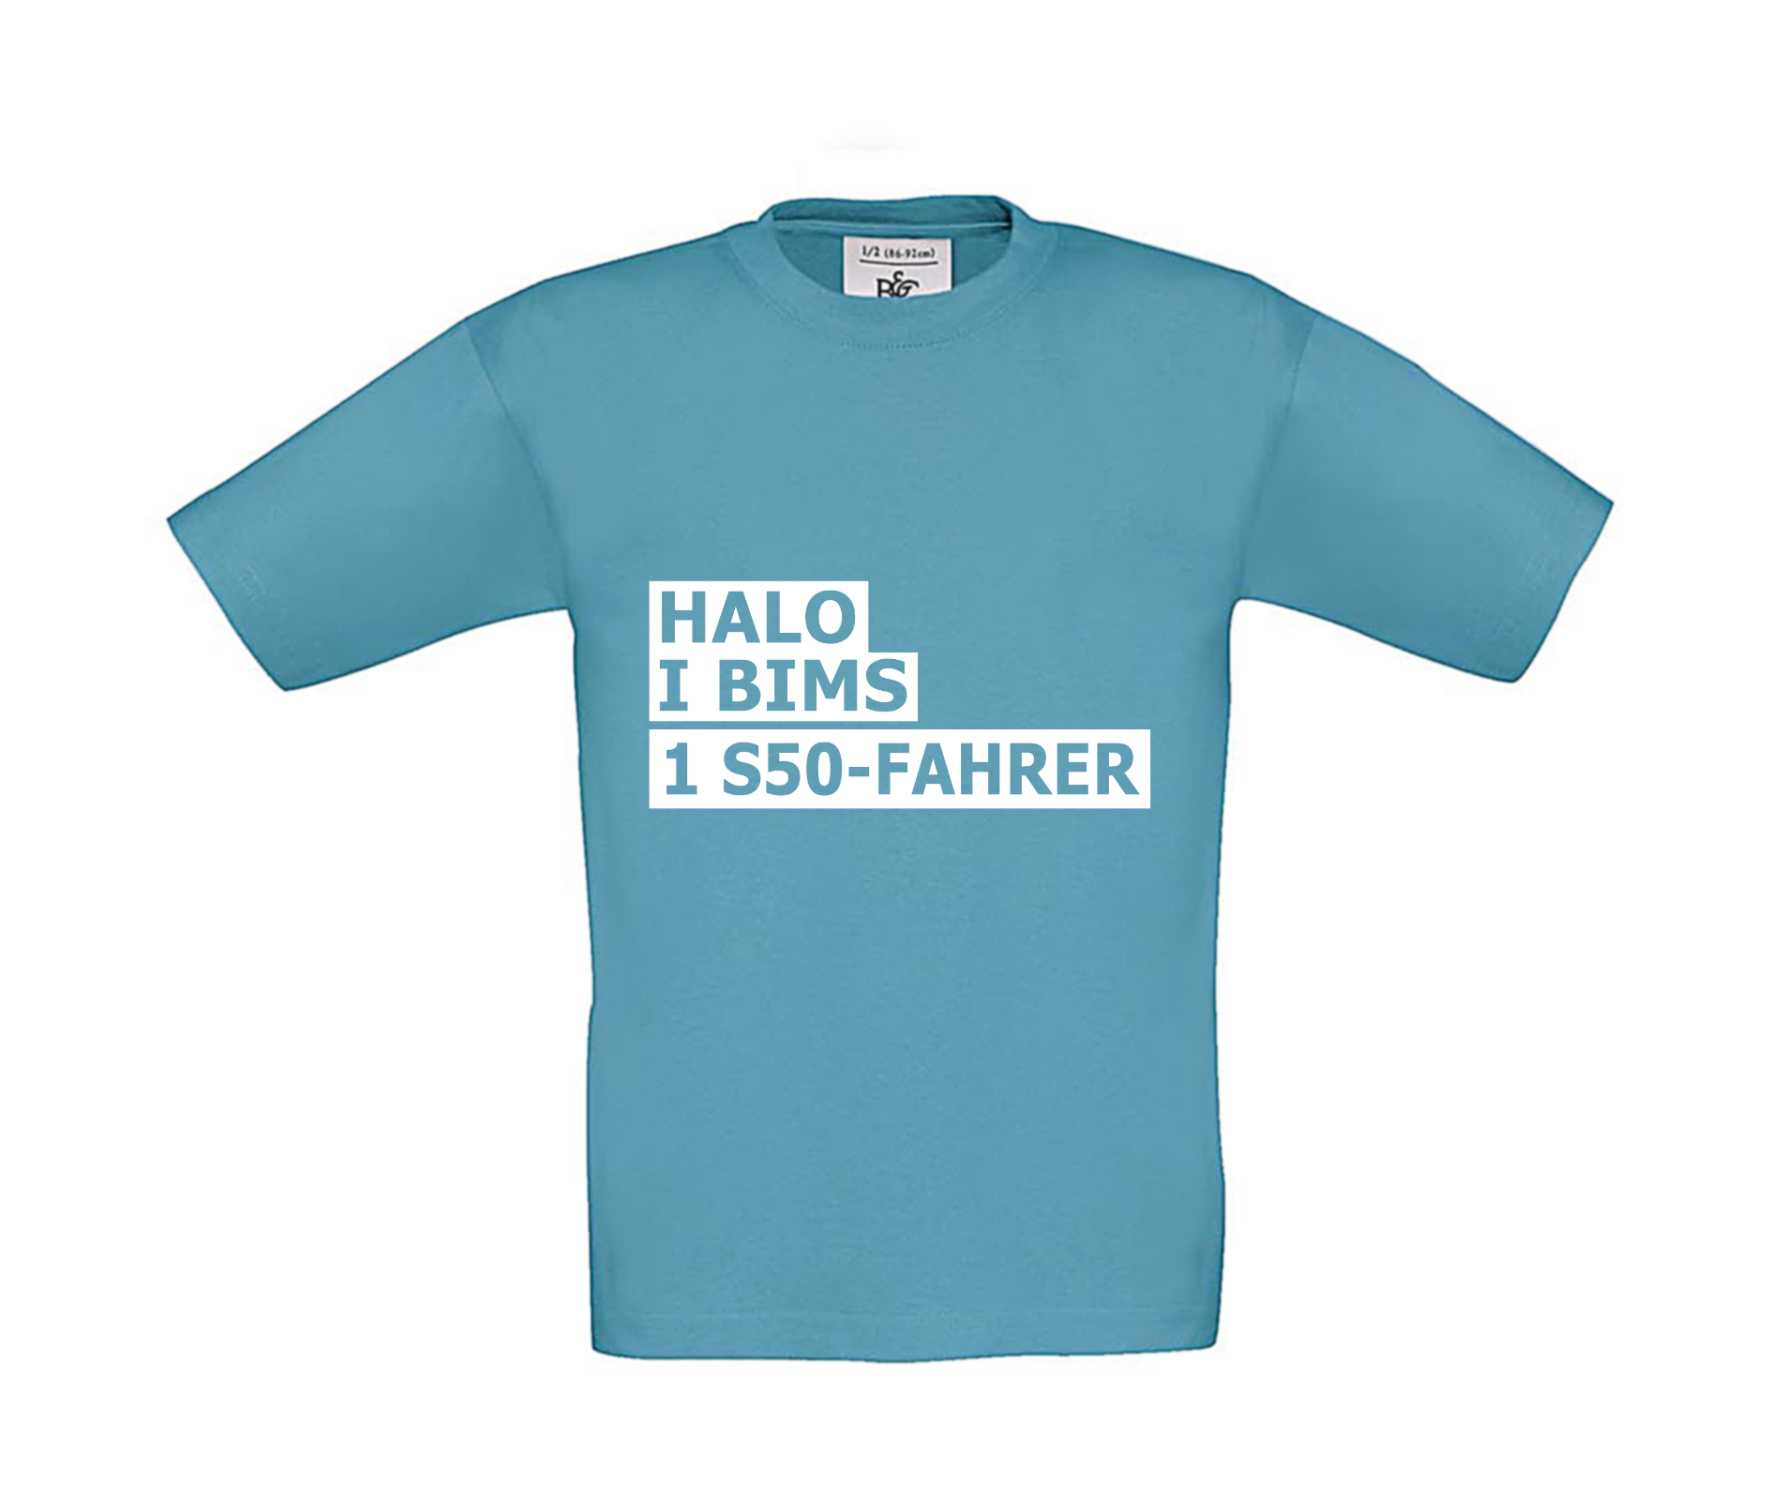 T-Shirt Kinder 2Takter - Halo I bims 1 S50-Fahrer